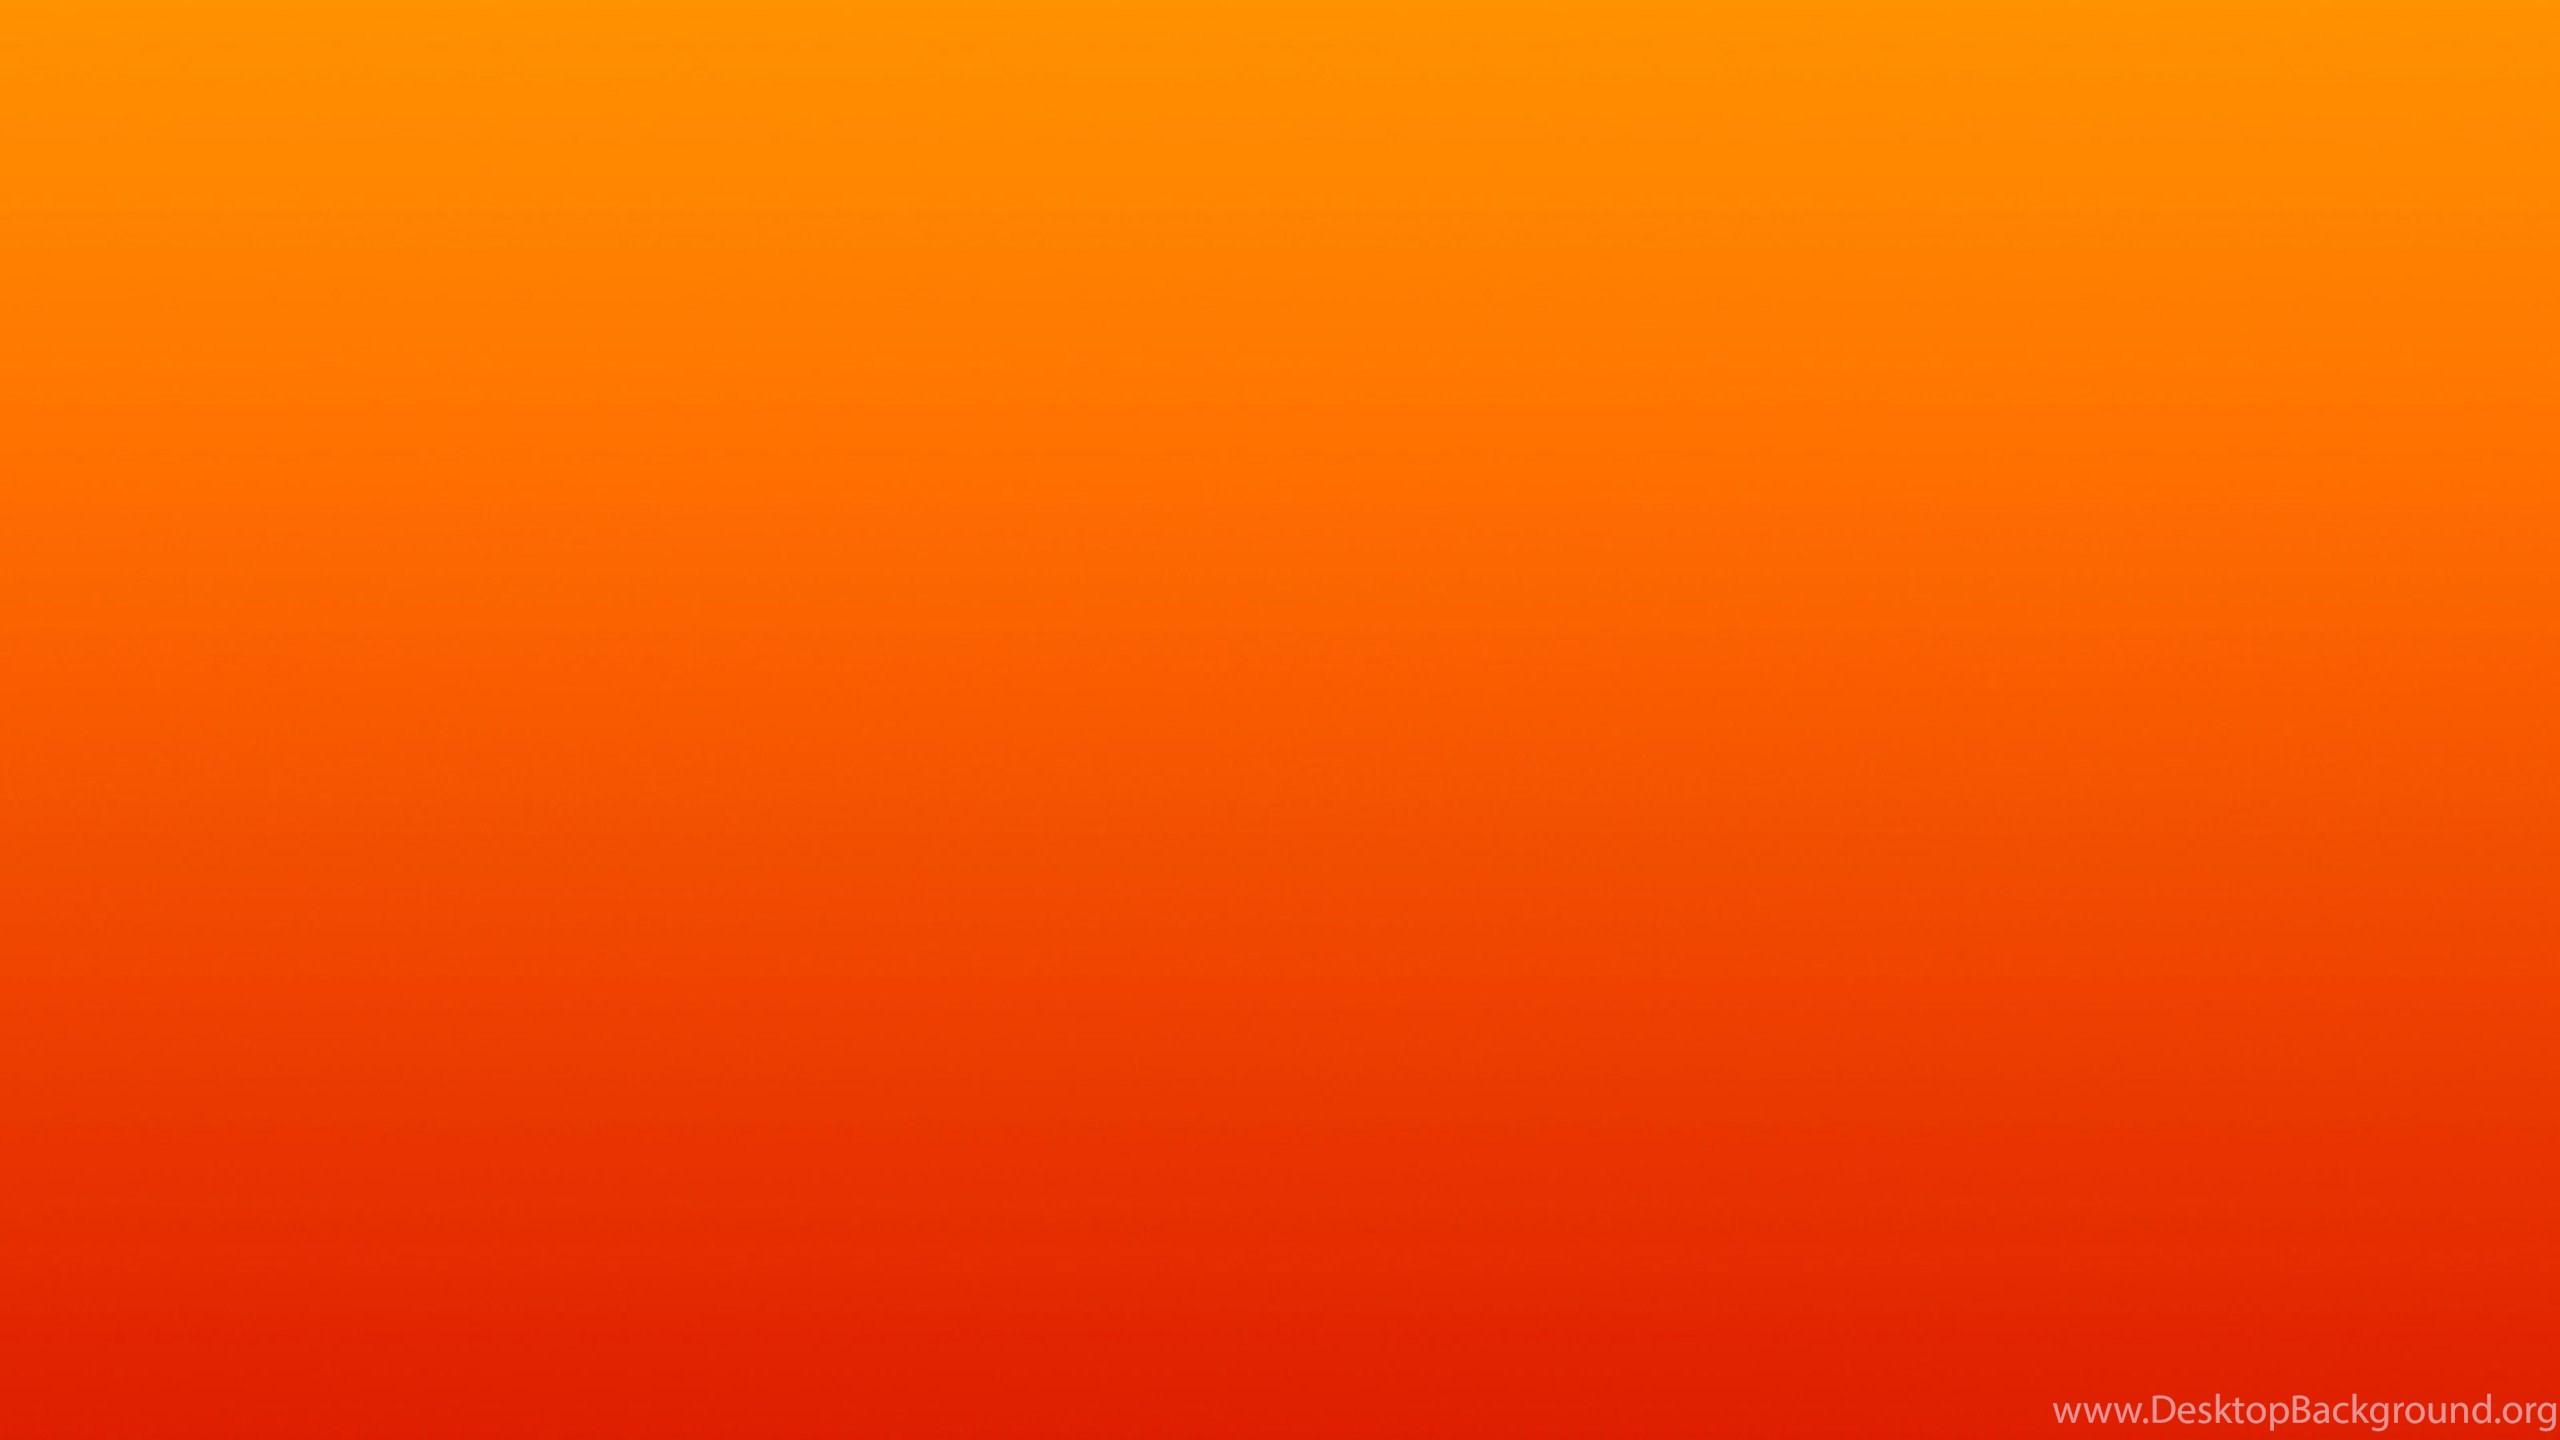 2560 x 1440 · jpeg - Simple Light Red Backgrounds Wallpaper, HD Wallpapers Downloads Desktop ...